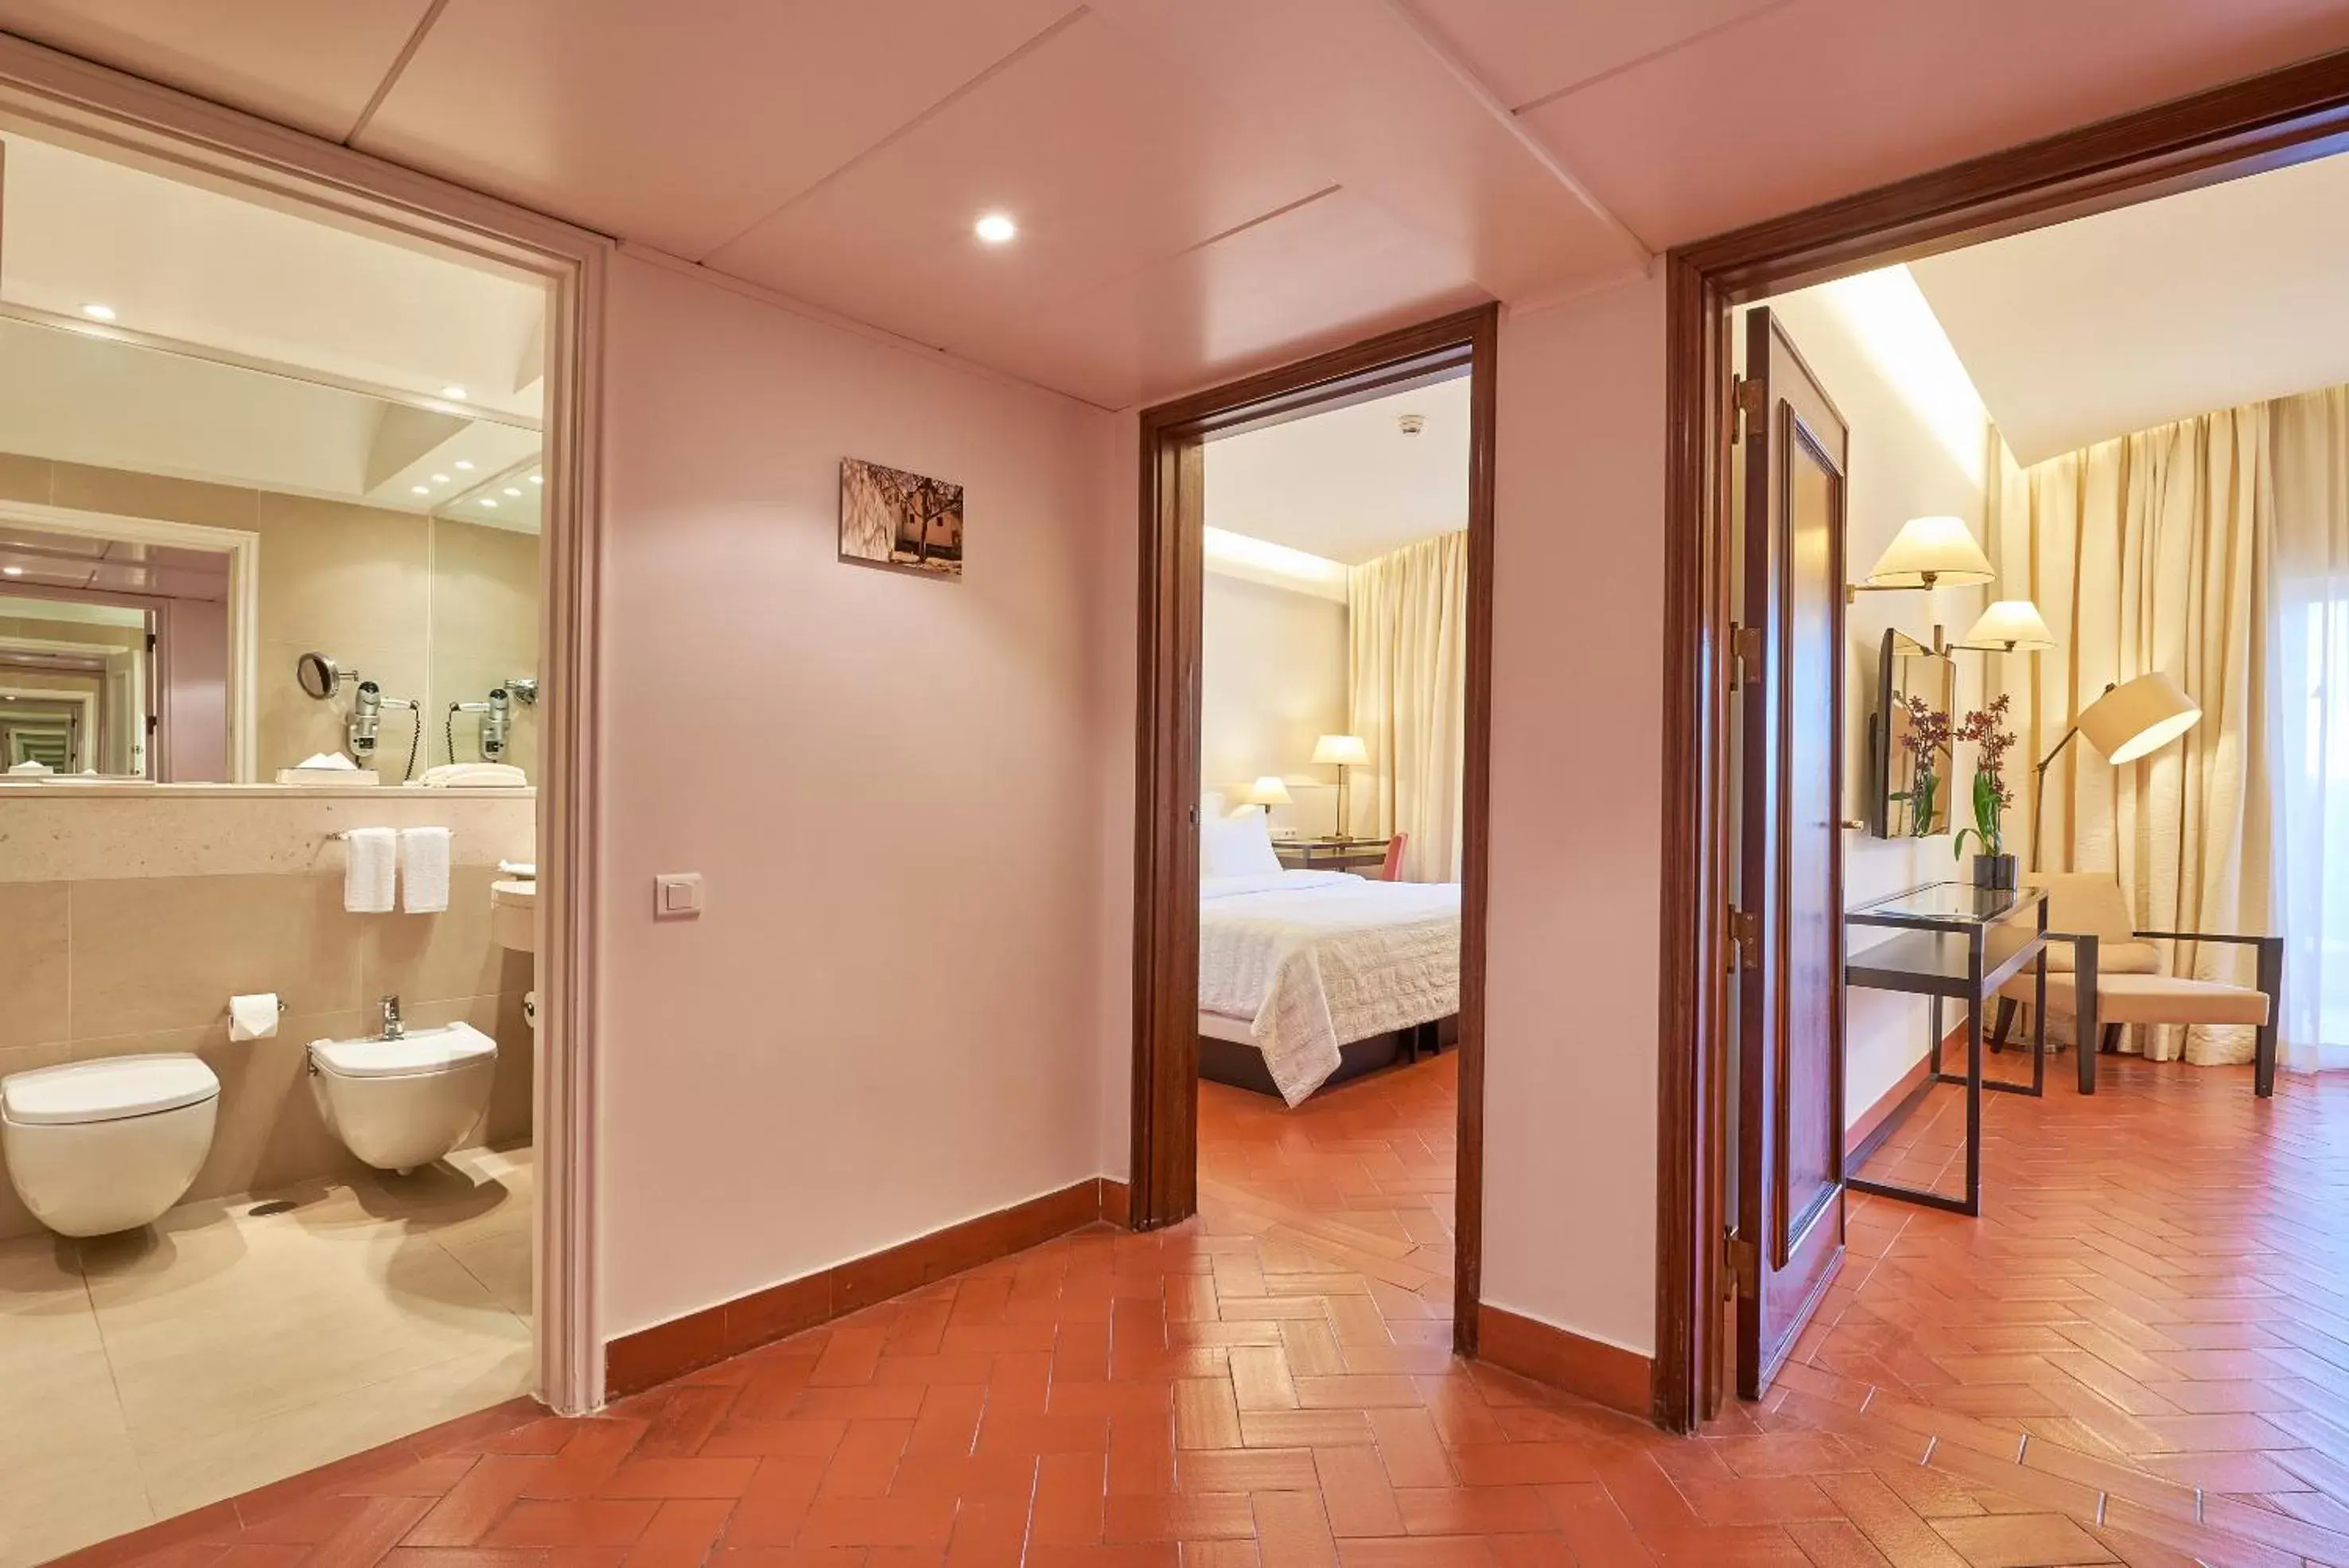 Living room, Bathroom in Penina Hotel & Golf Resort